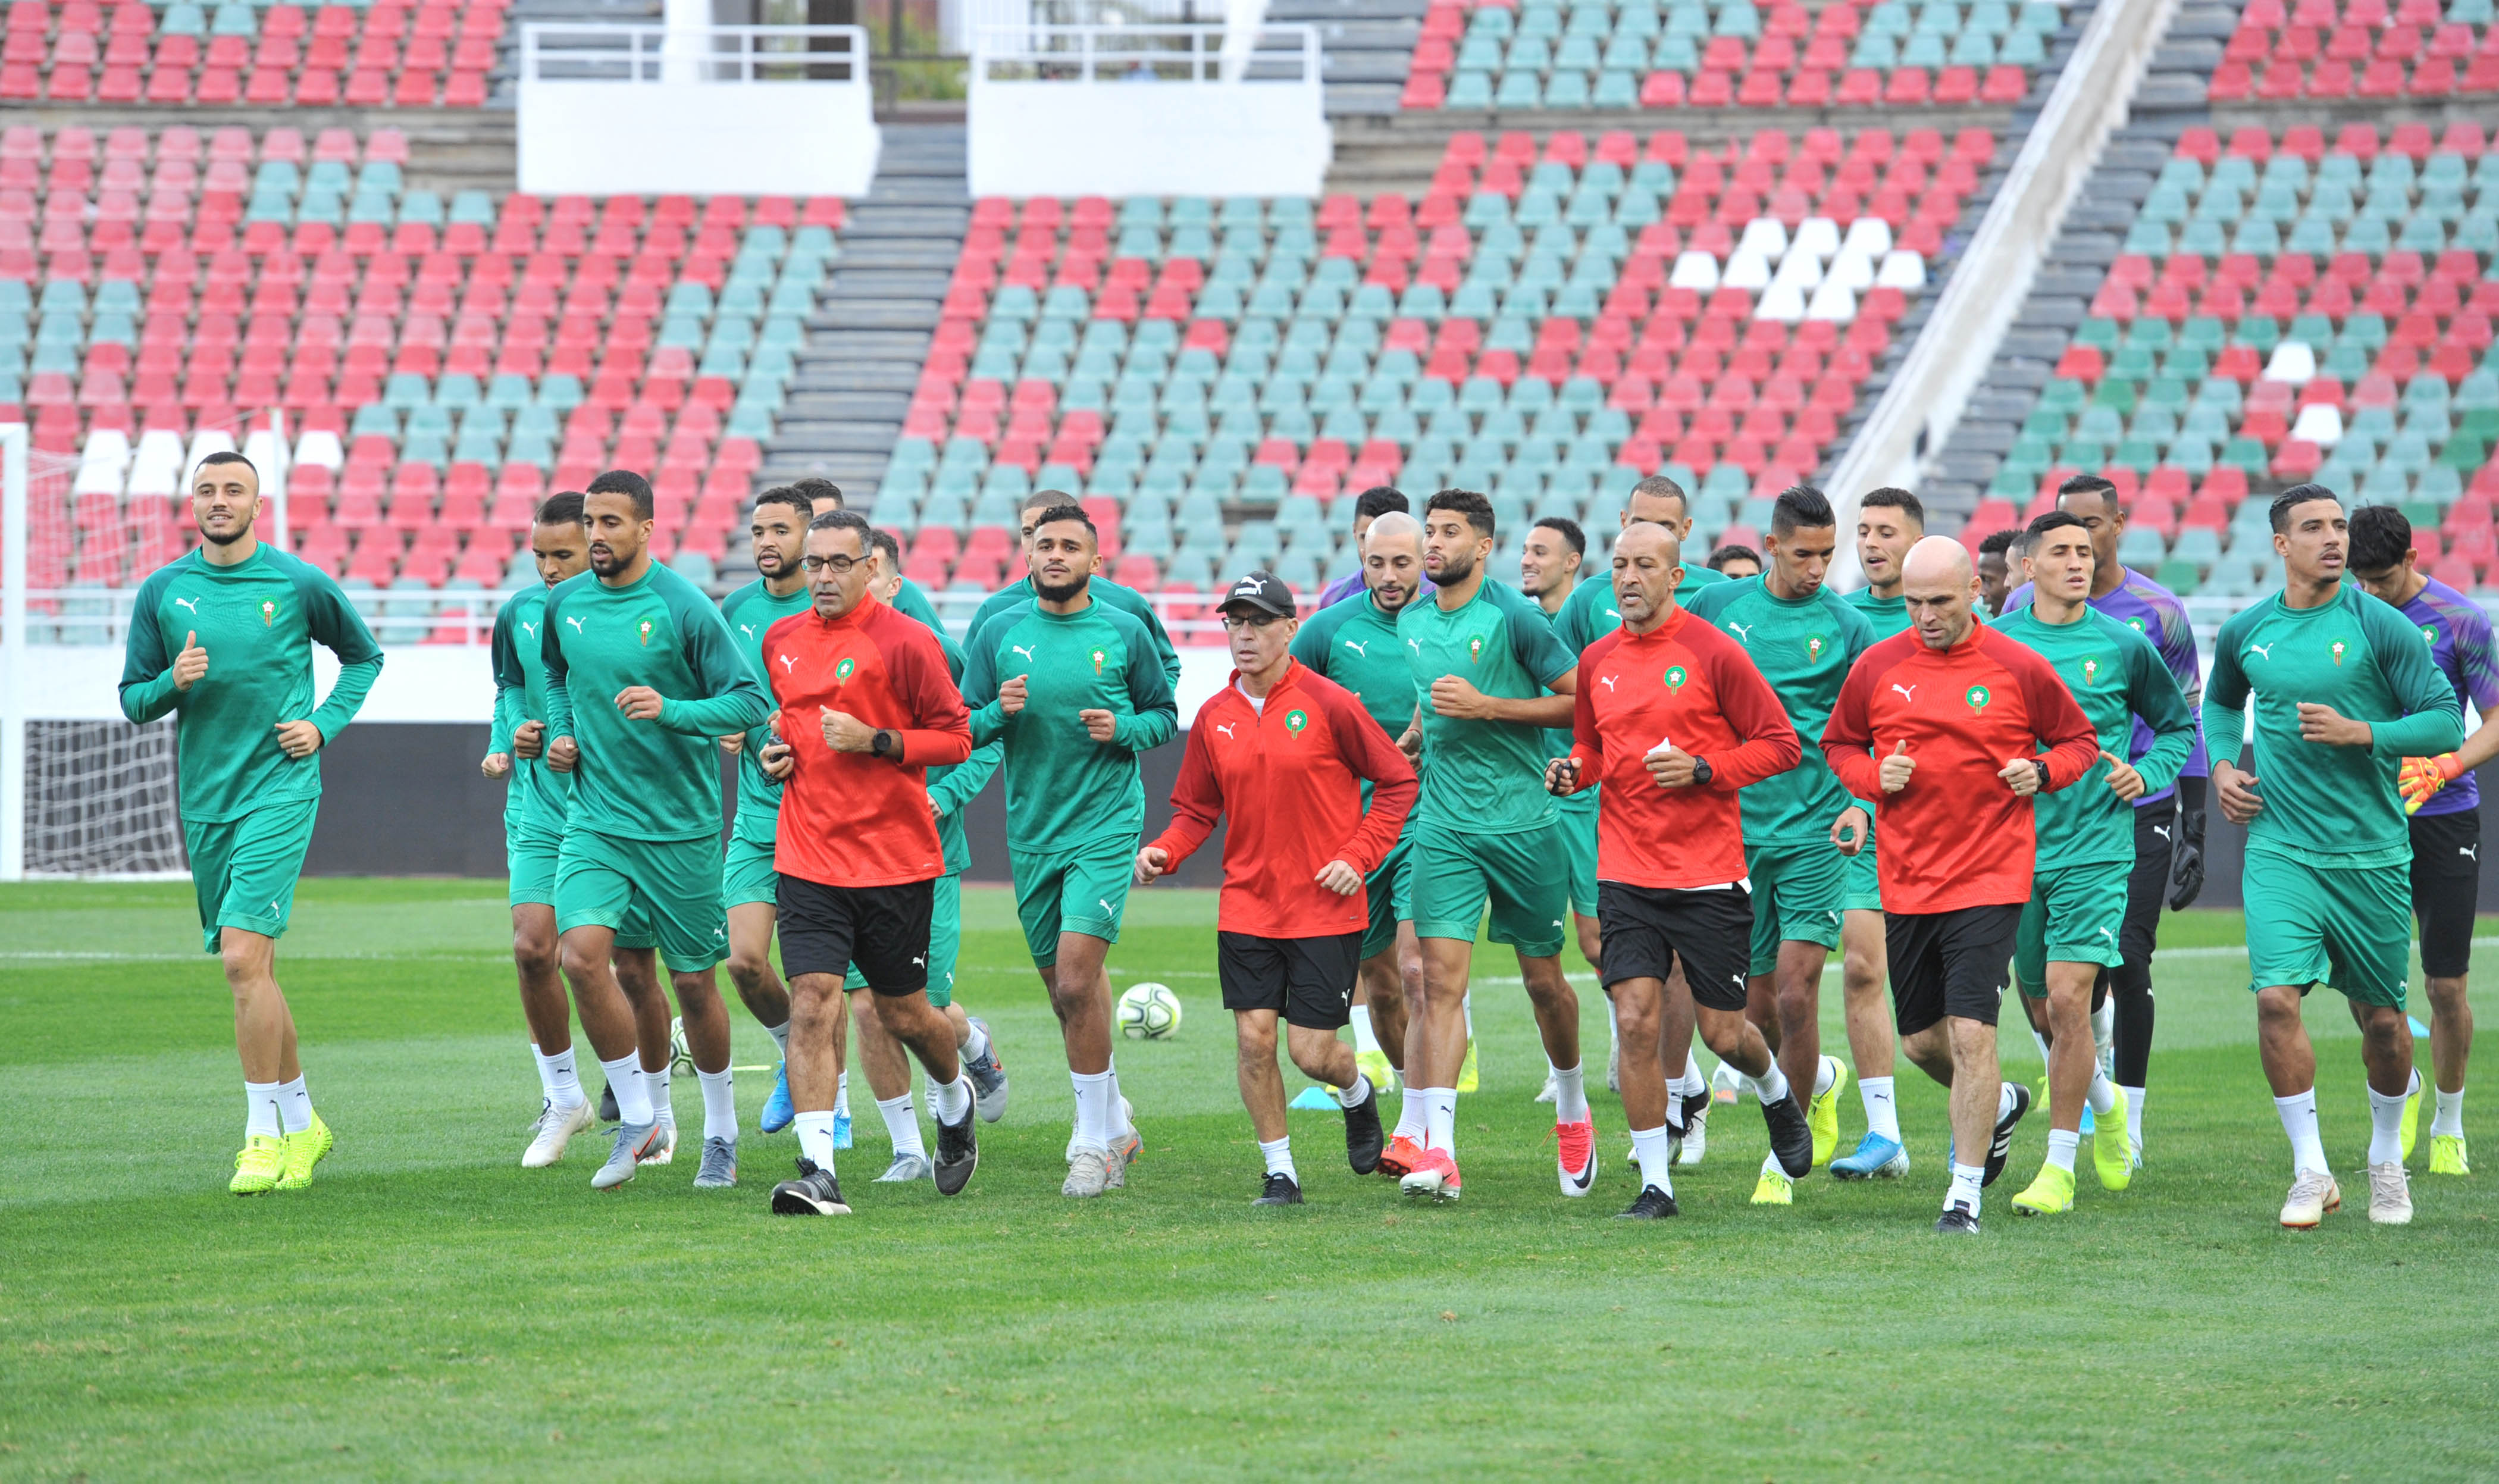 حصص للتدليك لتجهيز لاعبي المنتخب المغربي